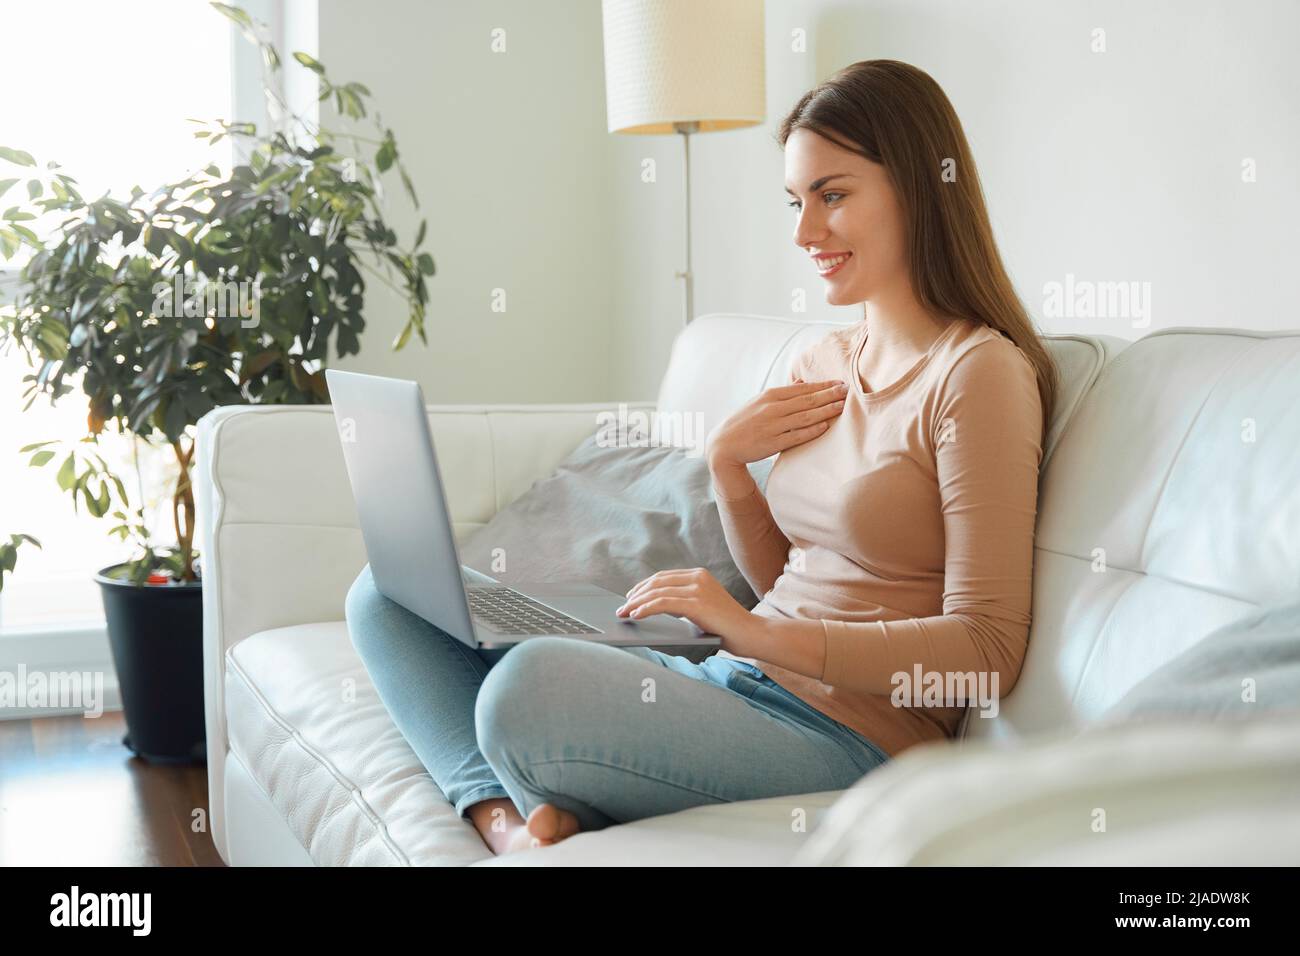 Pleine photo de corps jeune femme adolescente ayant parlé sur ordinateur portable vidéo conférence Banque D'Images